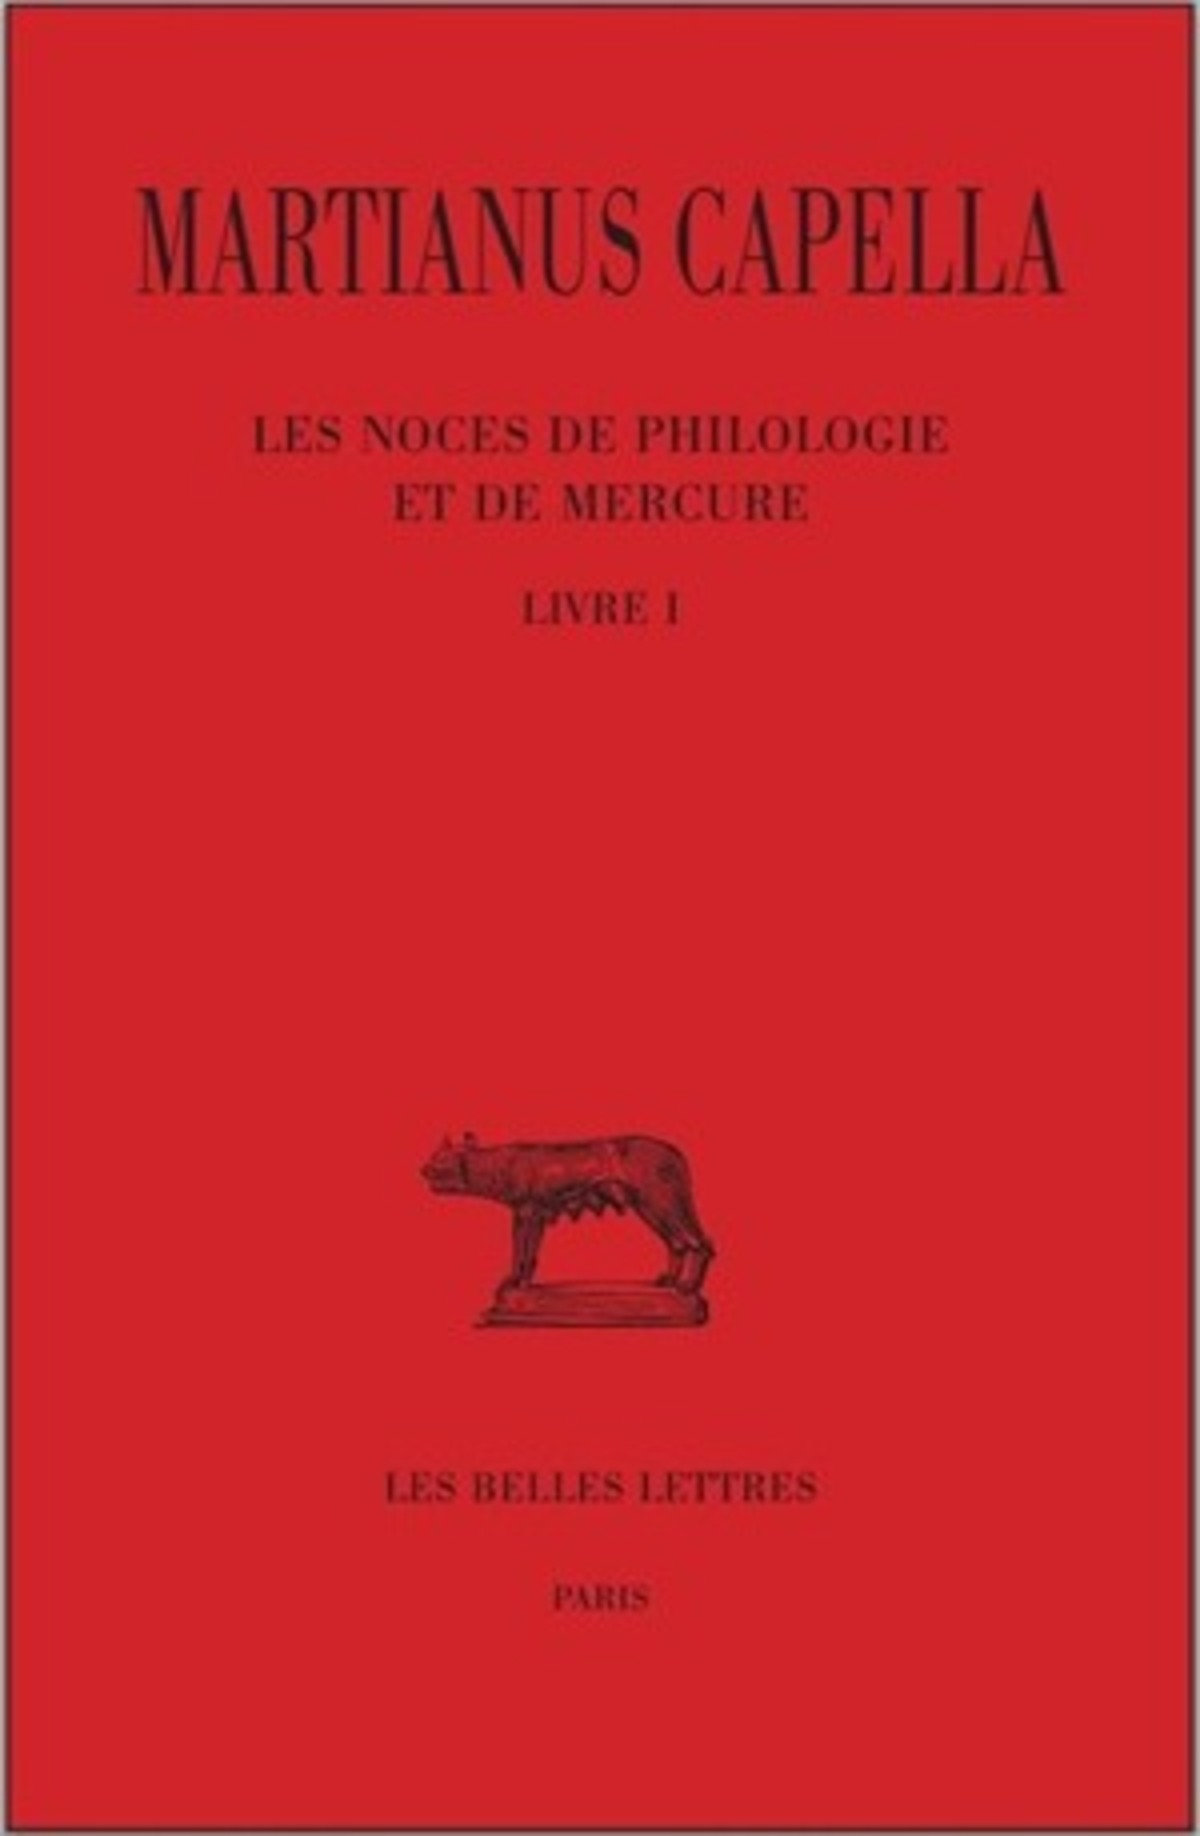 Les Noces de Philologie et de Mercure. Tome I : Livre I